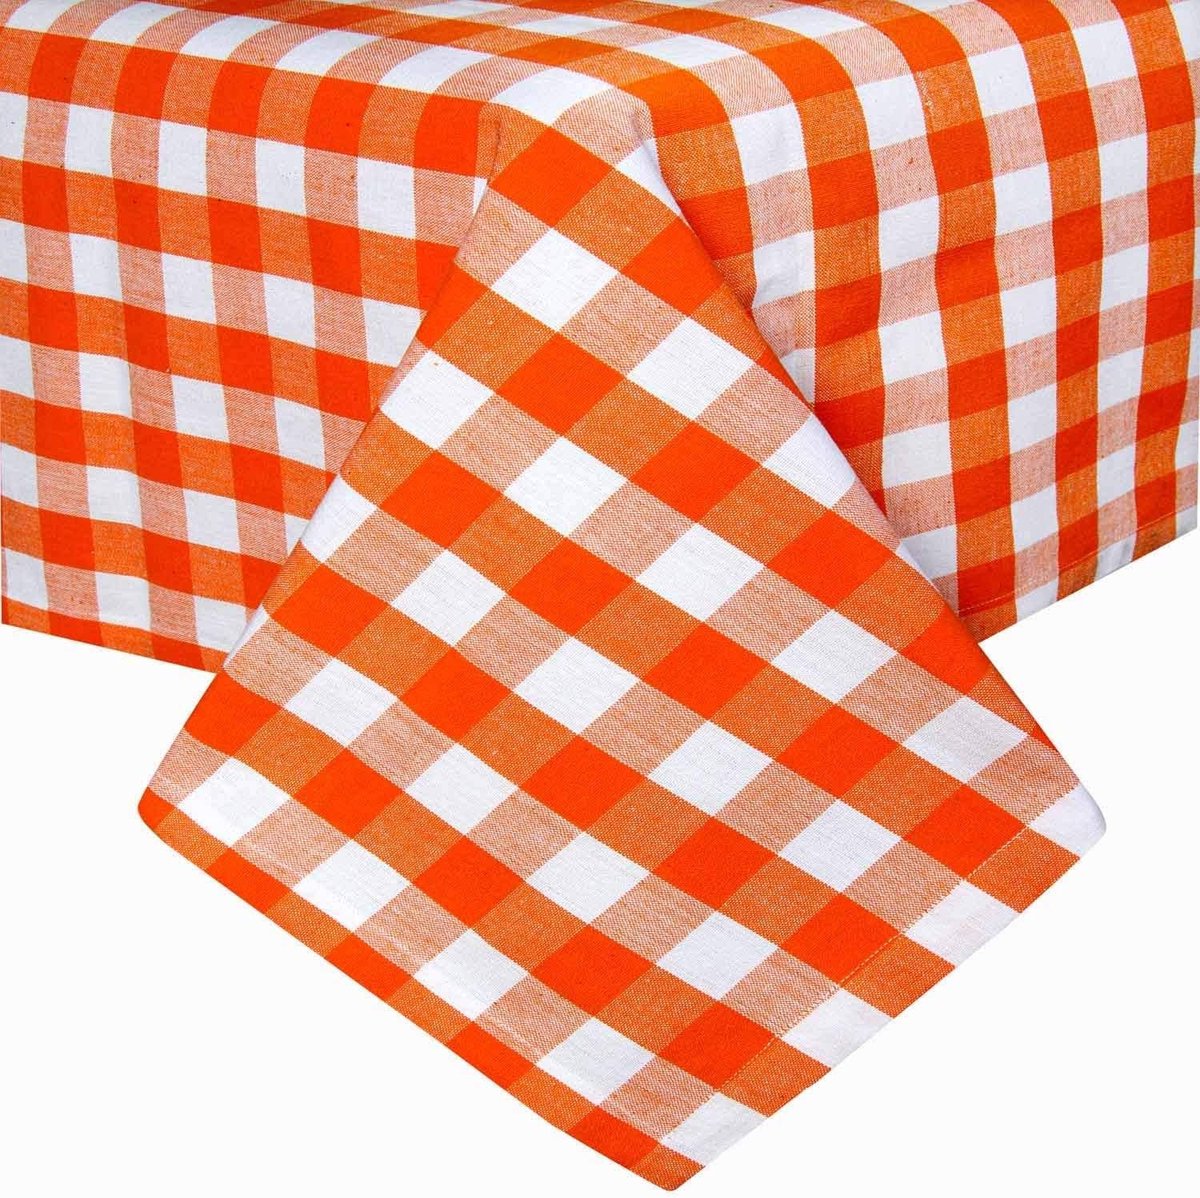 Geruit tafelkleed, oranje, Gingham-tafelkleed van 100% katoen met ruitpatroon, vierkant tafelkleed voor eettafel of keukentafel, 137 x 228 cm